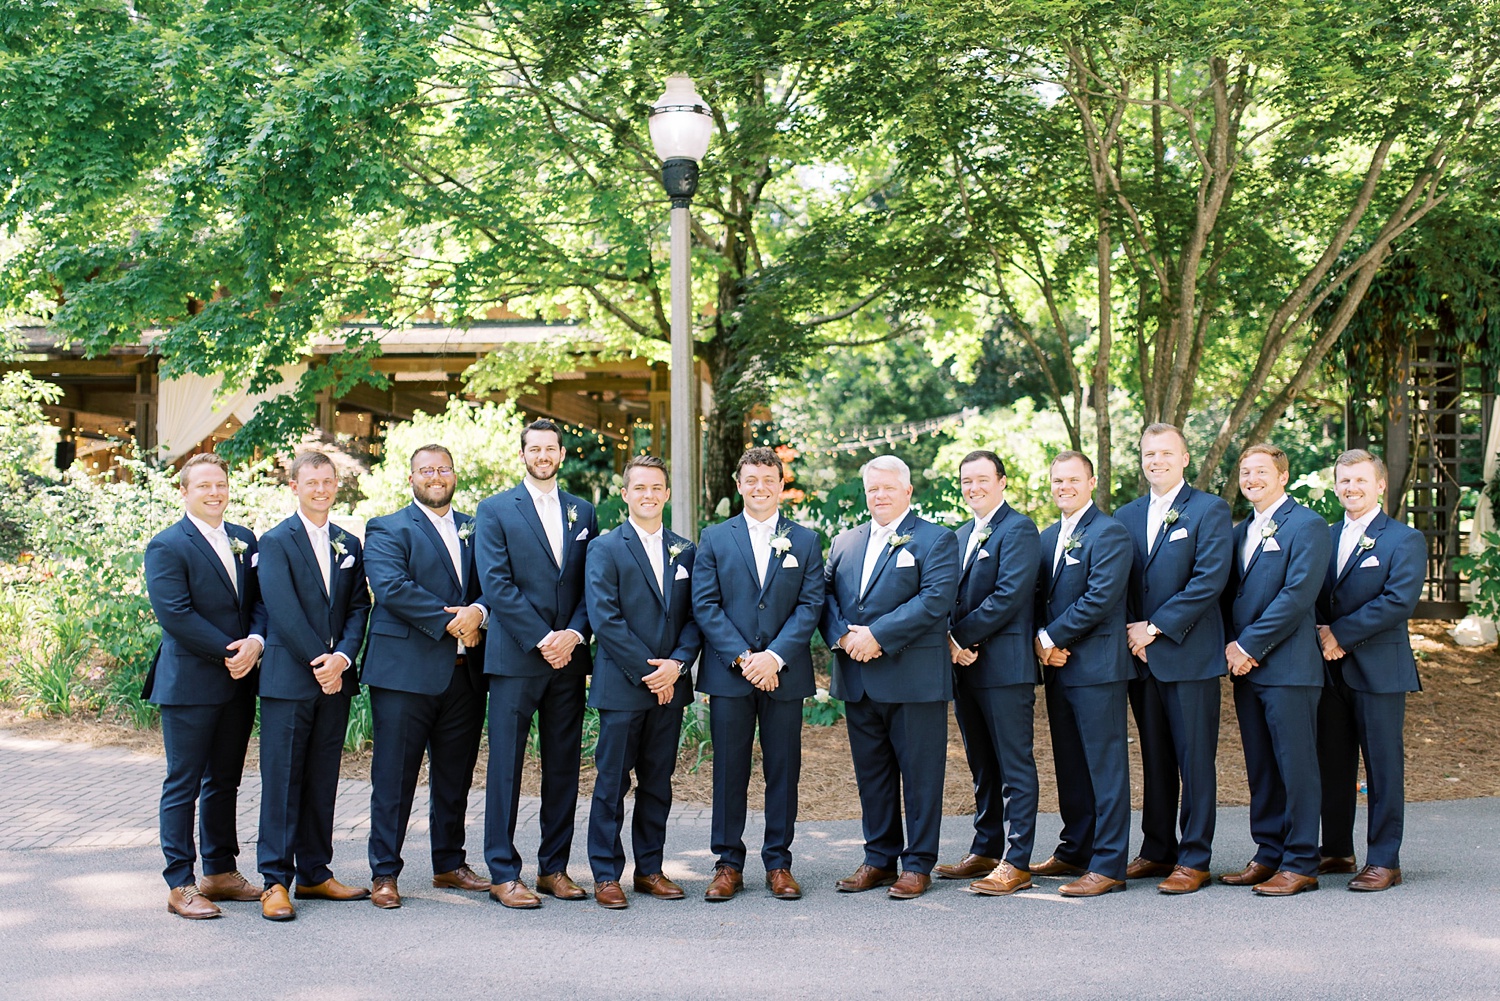 Aldridge Gardens Wedding Day | Best Birmingham Alabama Wedding Photographers_0042.jpg